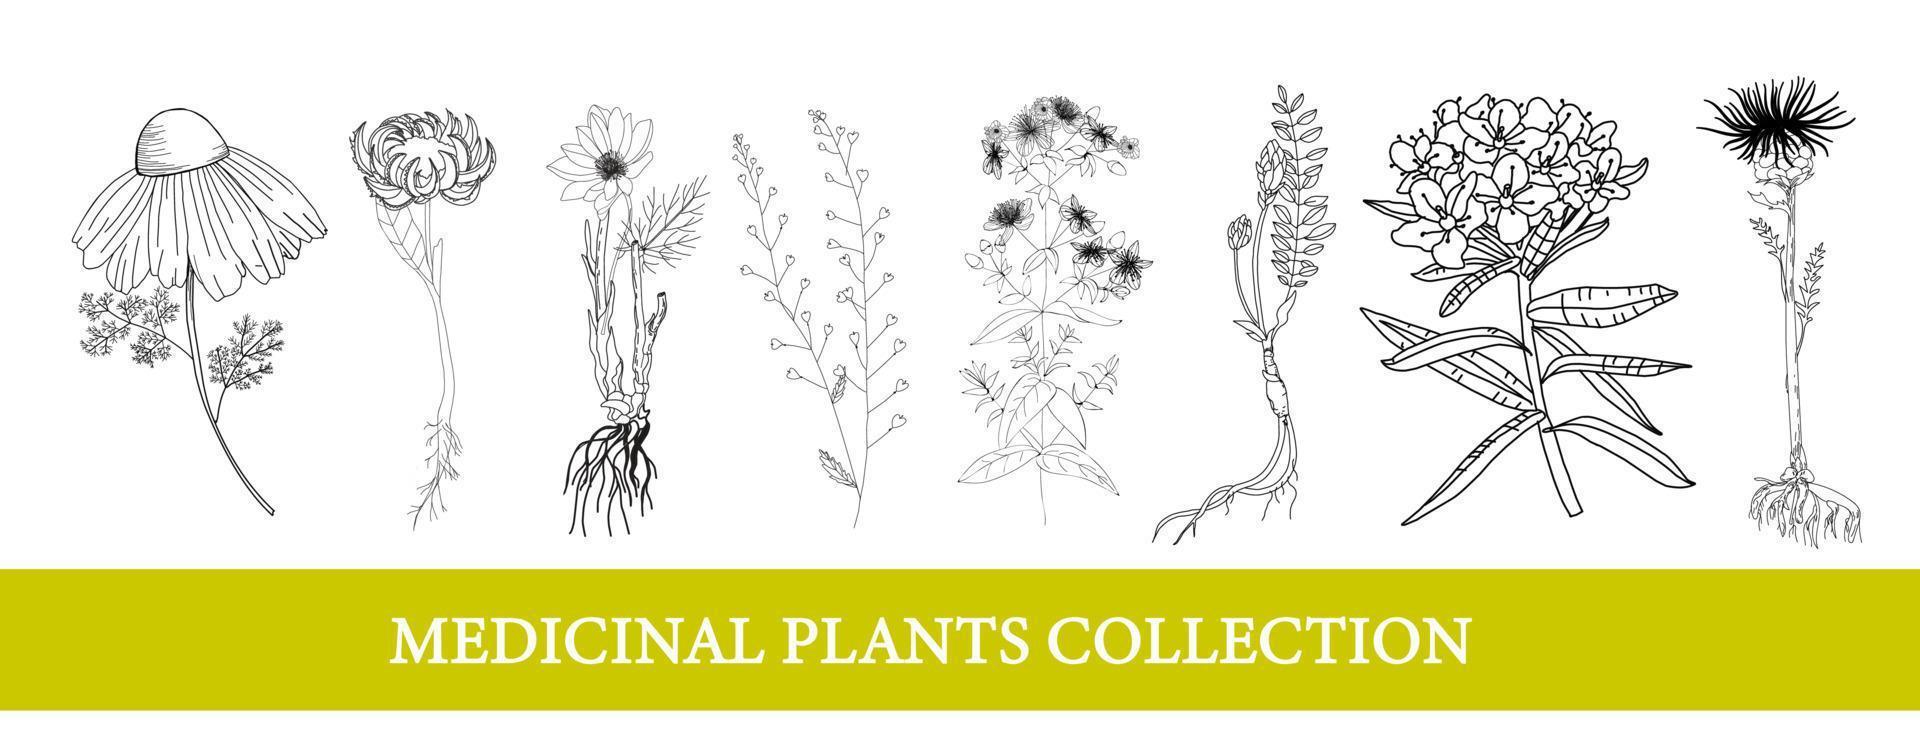 ledum, goudsbloem, leuzea, kamille. geneeskrachtig planten wilde bloemen vector illustratie botanisch illustratie